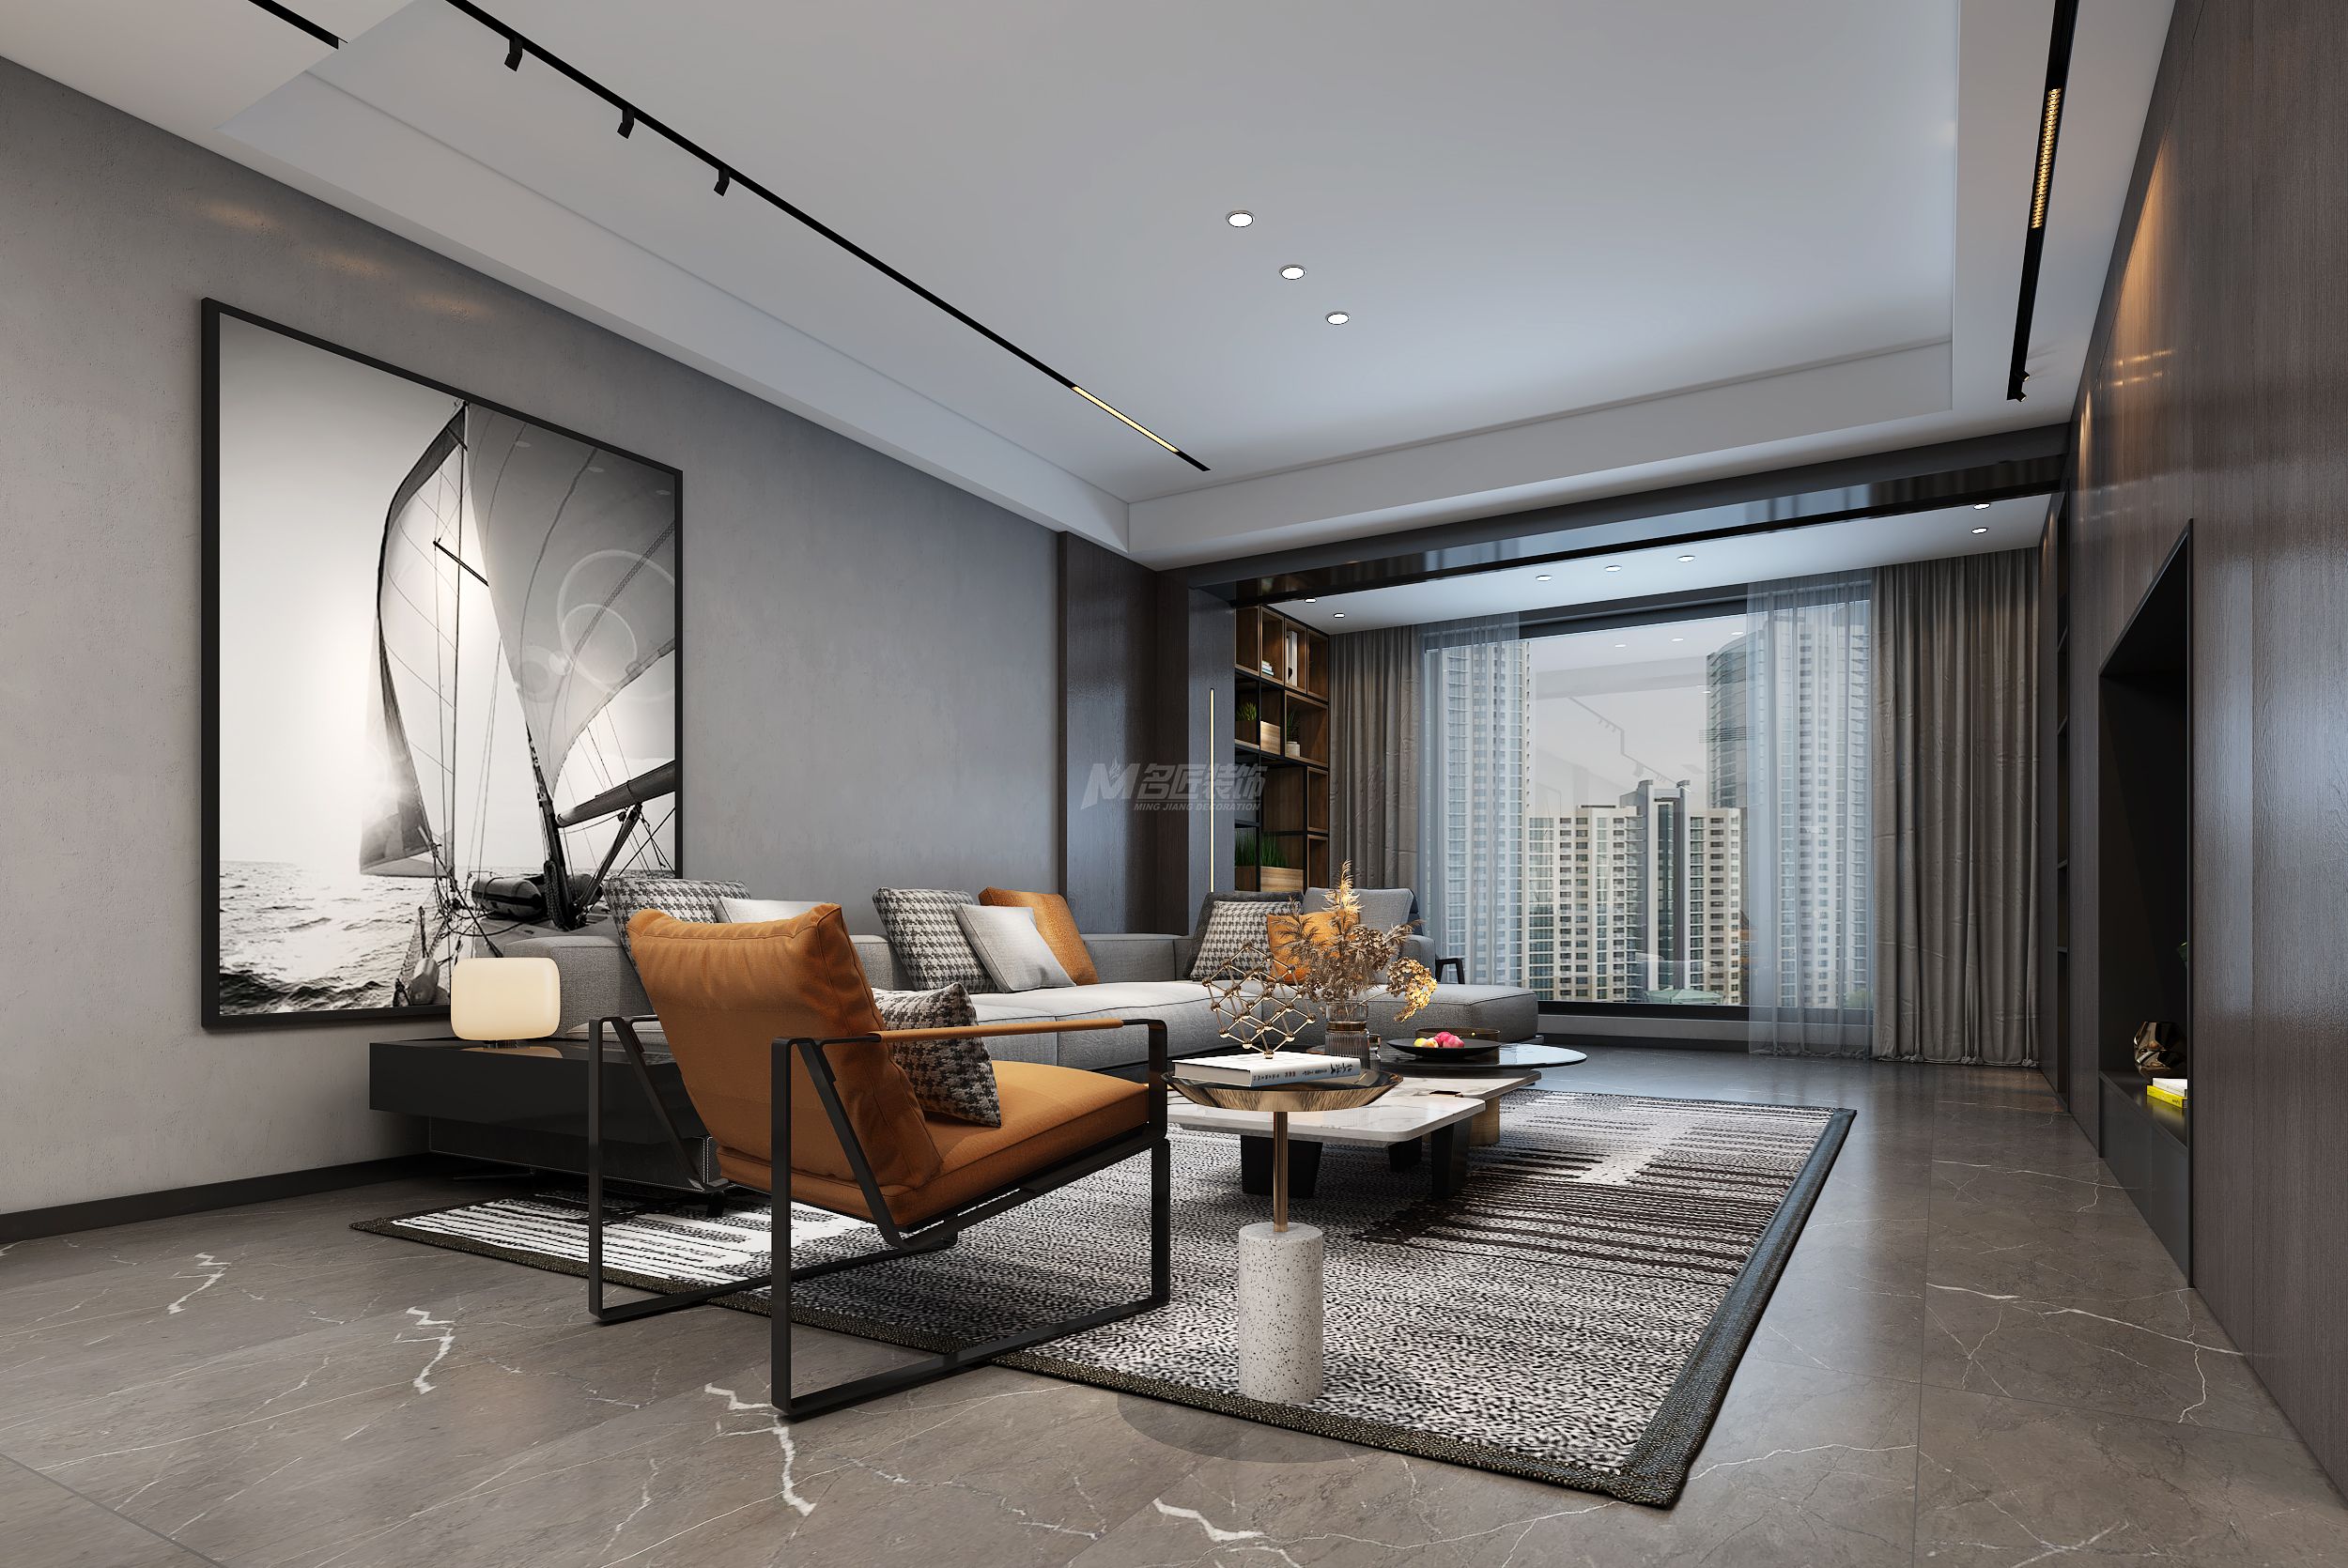 江山丽园160㎡客厅现代灰色极简装修风格效果图